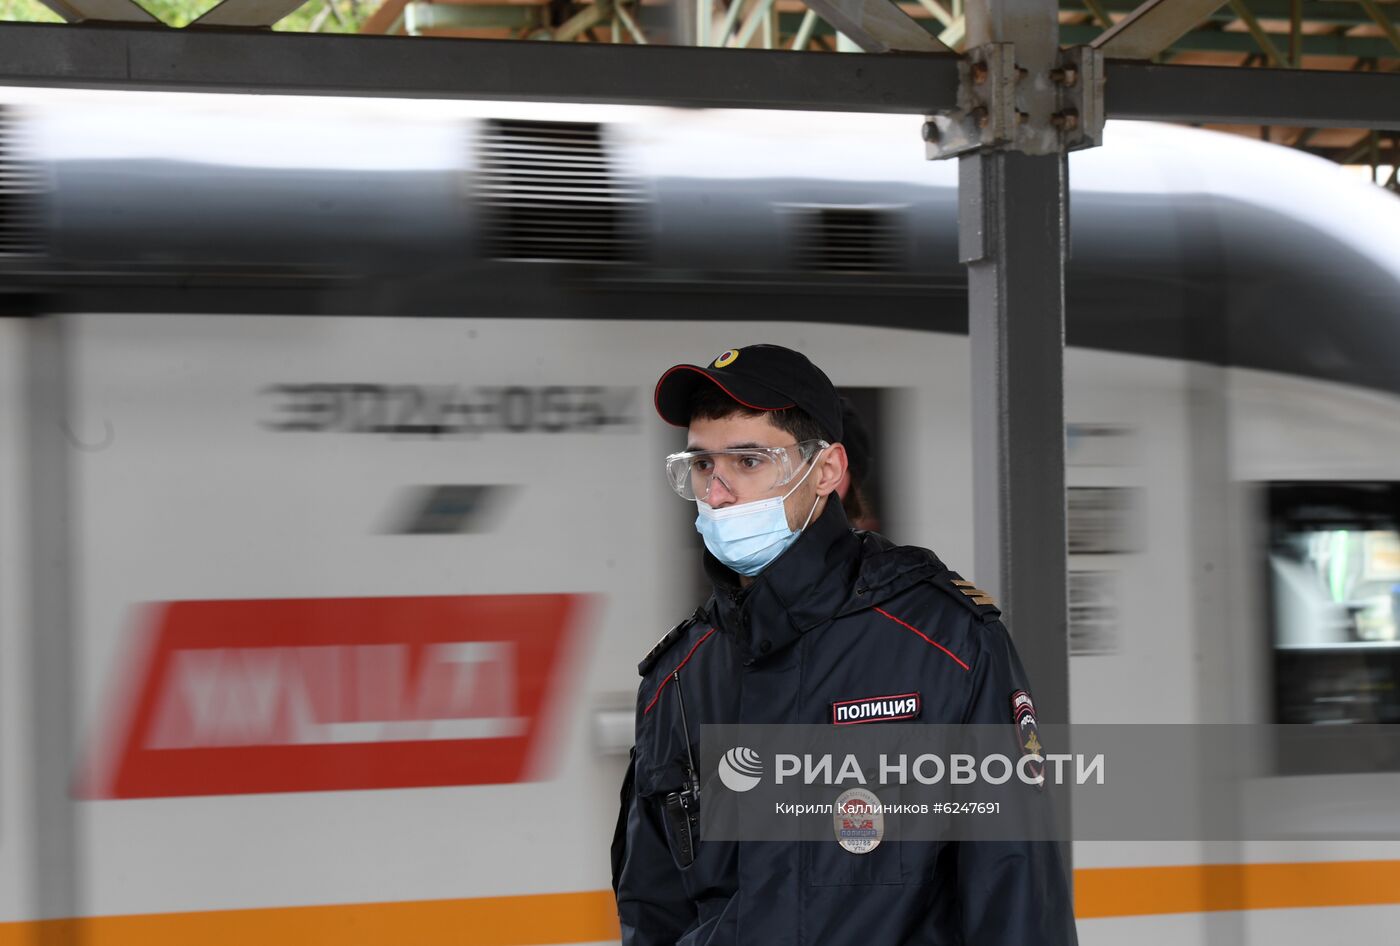 Проверка соблюдения ношения масок и перчаток в пригородных поездах